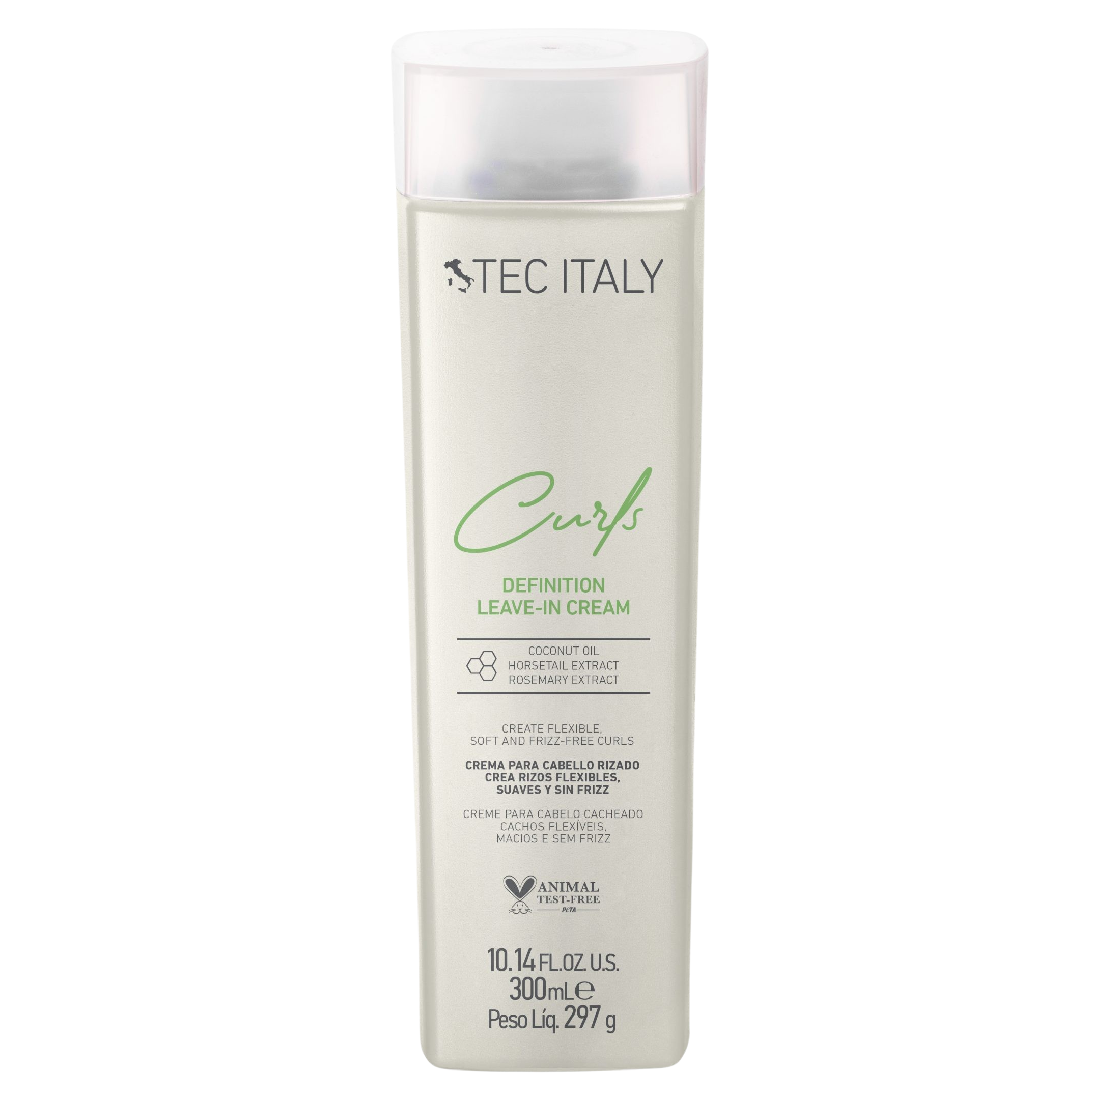 Tec Italy Curls Definition Leave-in Cream - Crema para crear rizos flexibles, suaves y sin frizz